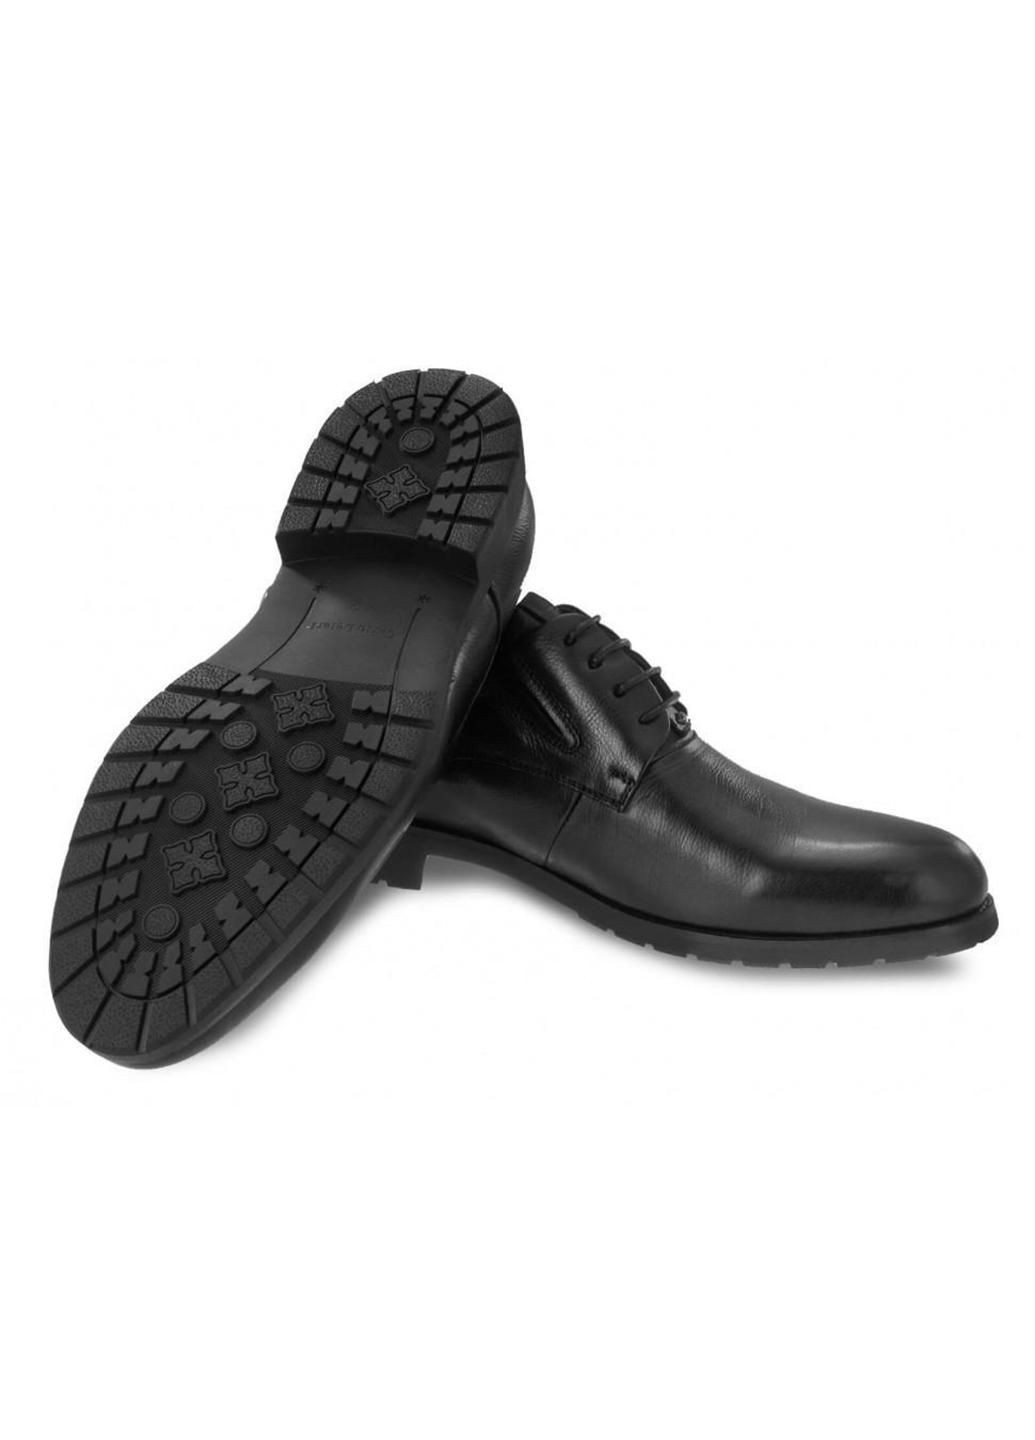 Черные туфли 7193041 цвет черный Carlo Delari